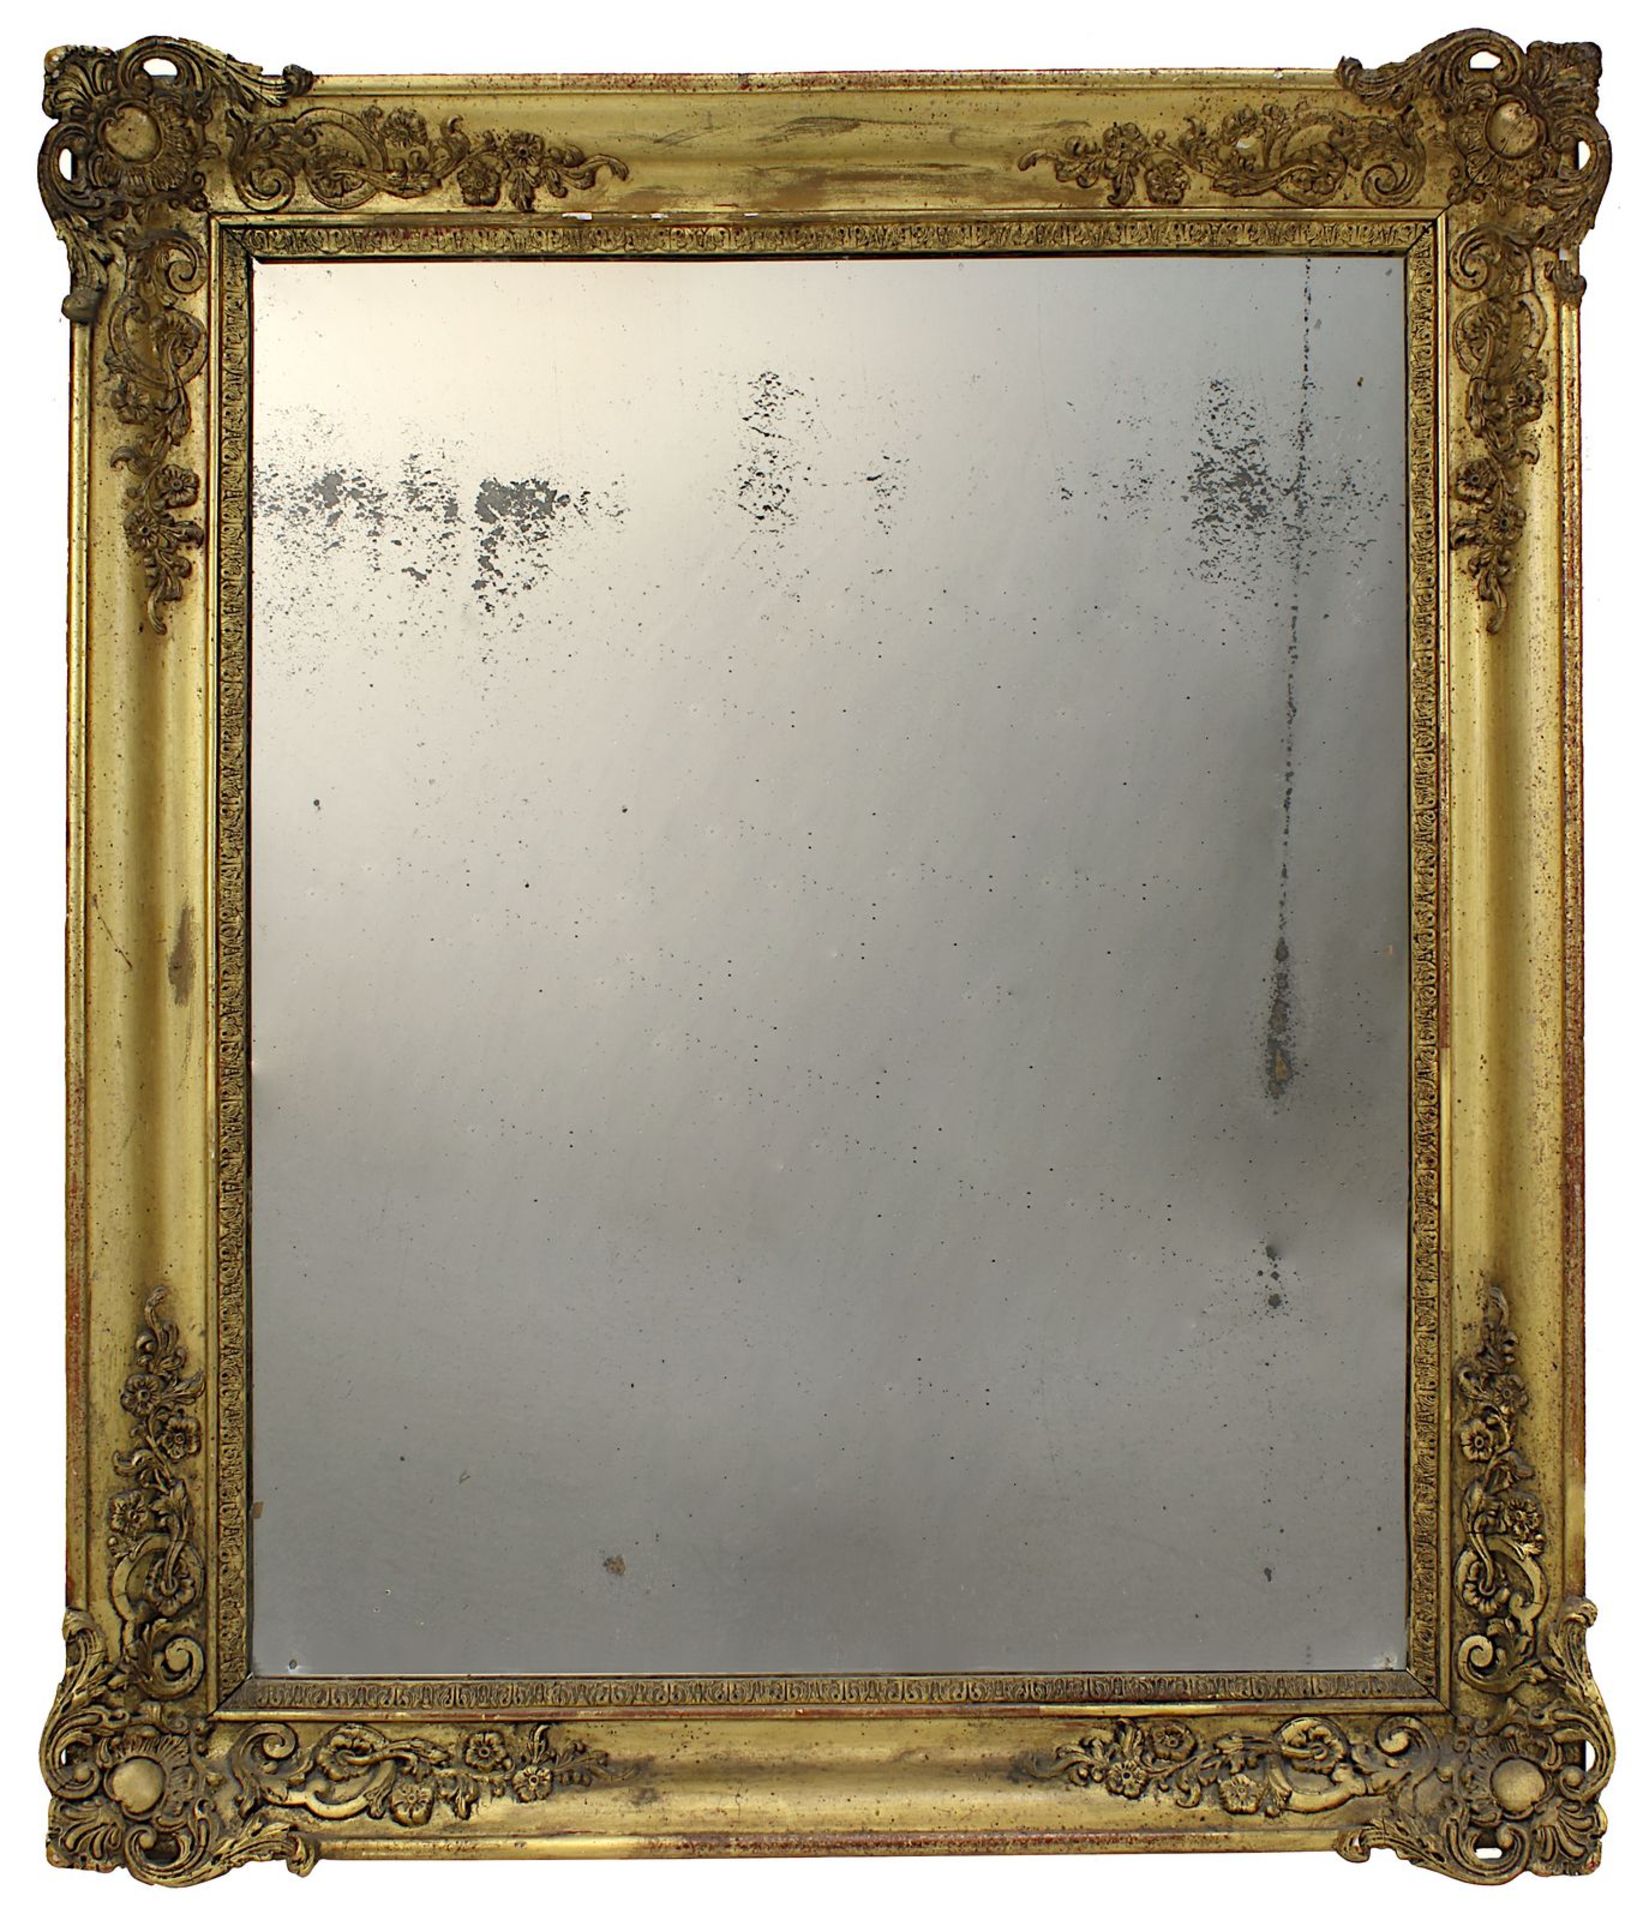 Spiegel im Prunkrahmen, Frankreich M. 19. Jh., vergoldeter Prunkrahmen mit stuckierten Ecken, mit